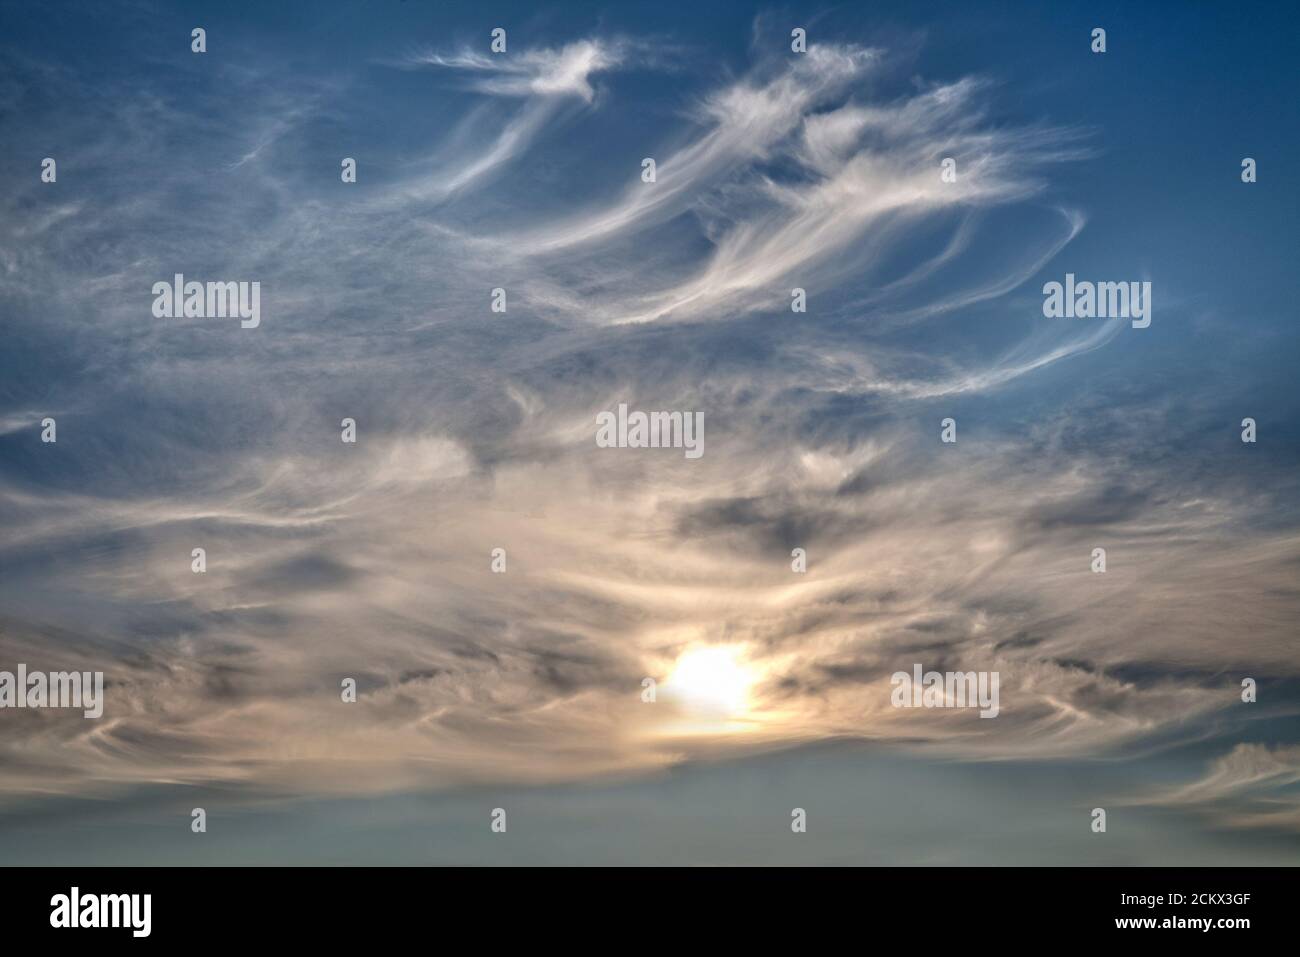 KONZEPTFOTOGRAFIE: Dramatische Wolkenbildung gegen Sonnenlicht Stockfoto